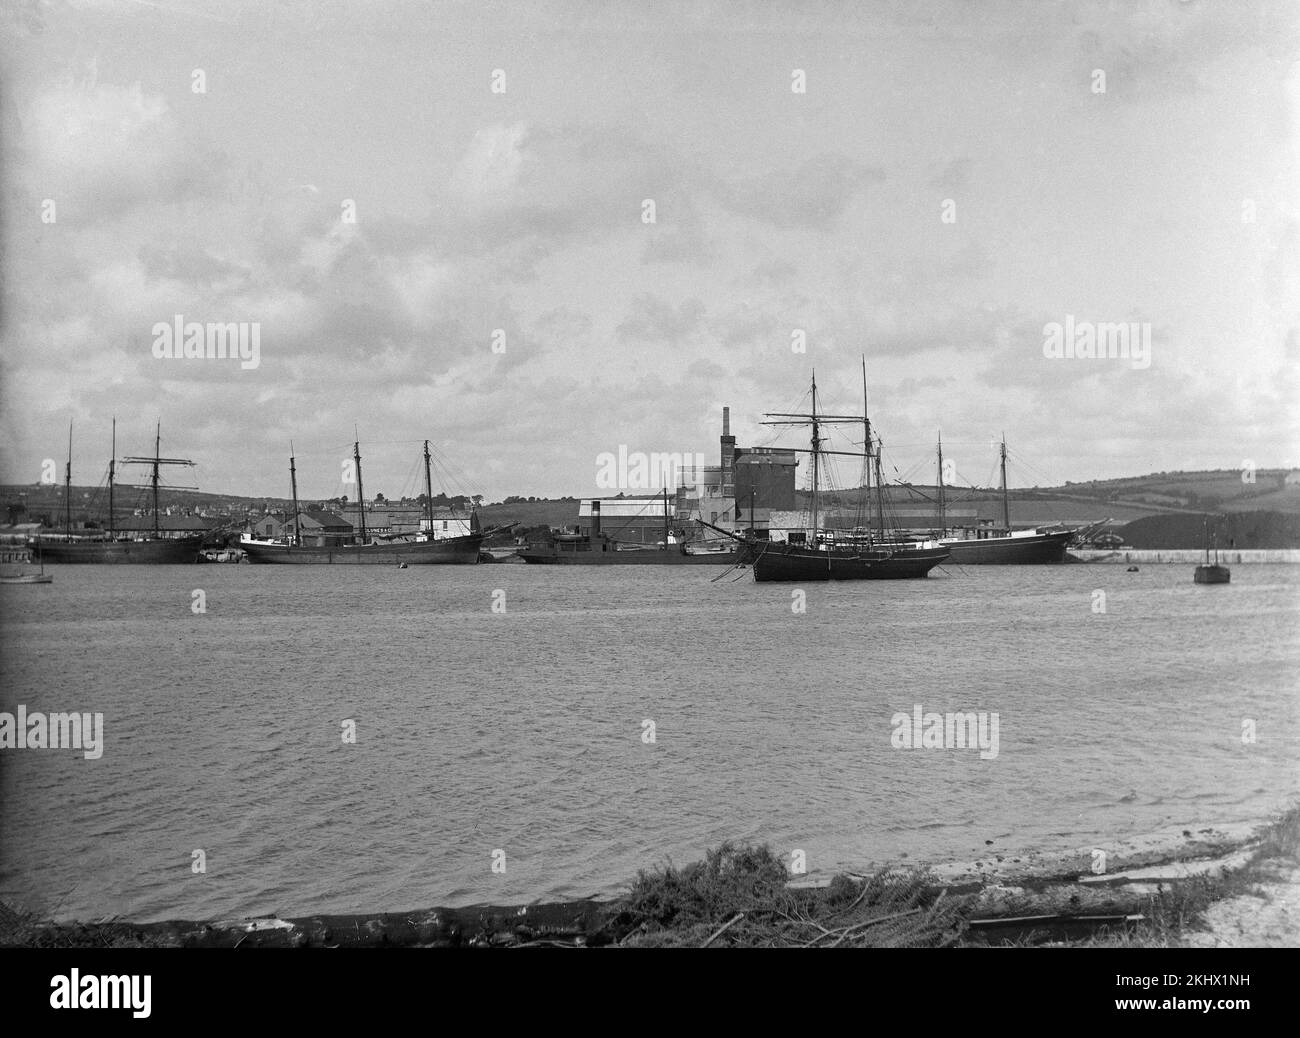 Una fotografía inglesa victoriana tardía que muestra una variedad de barcos de vela y barcos en un puerto. Foto de stock